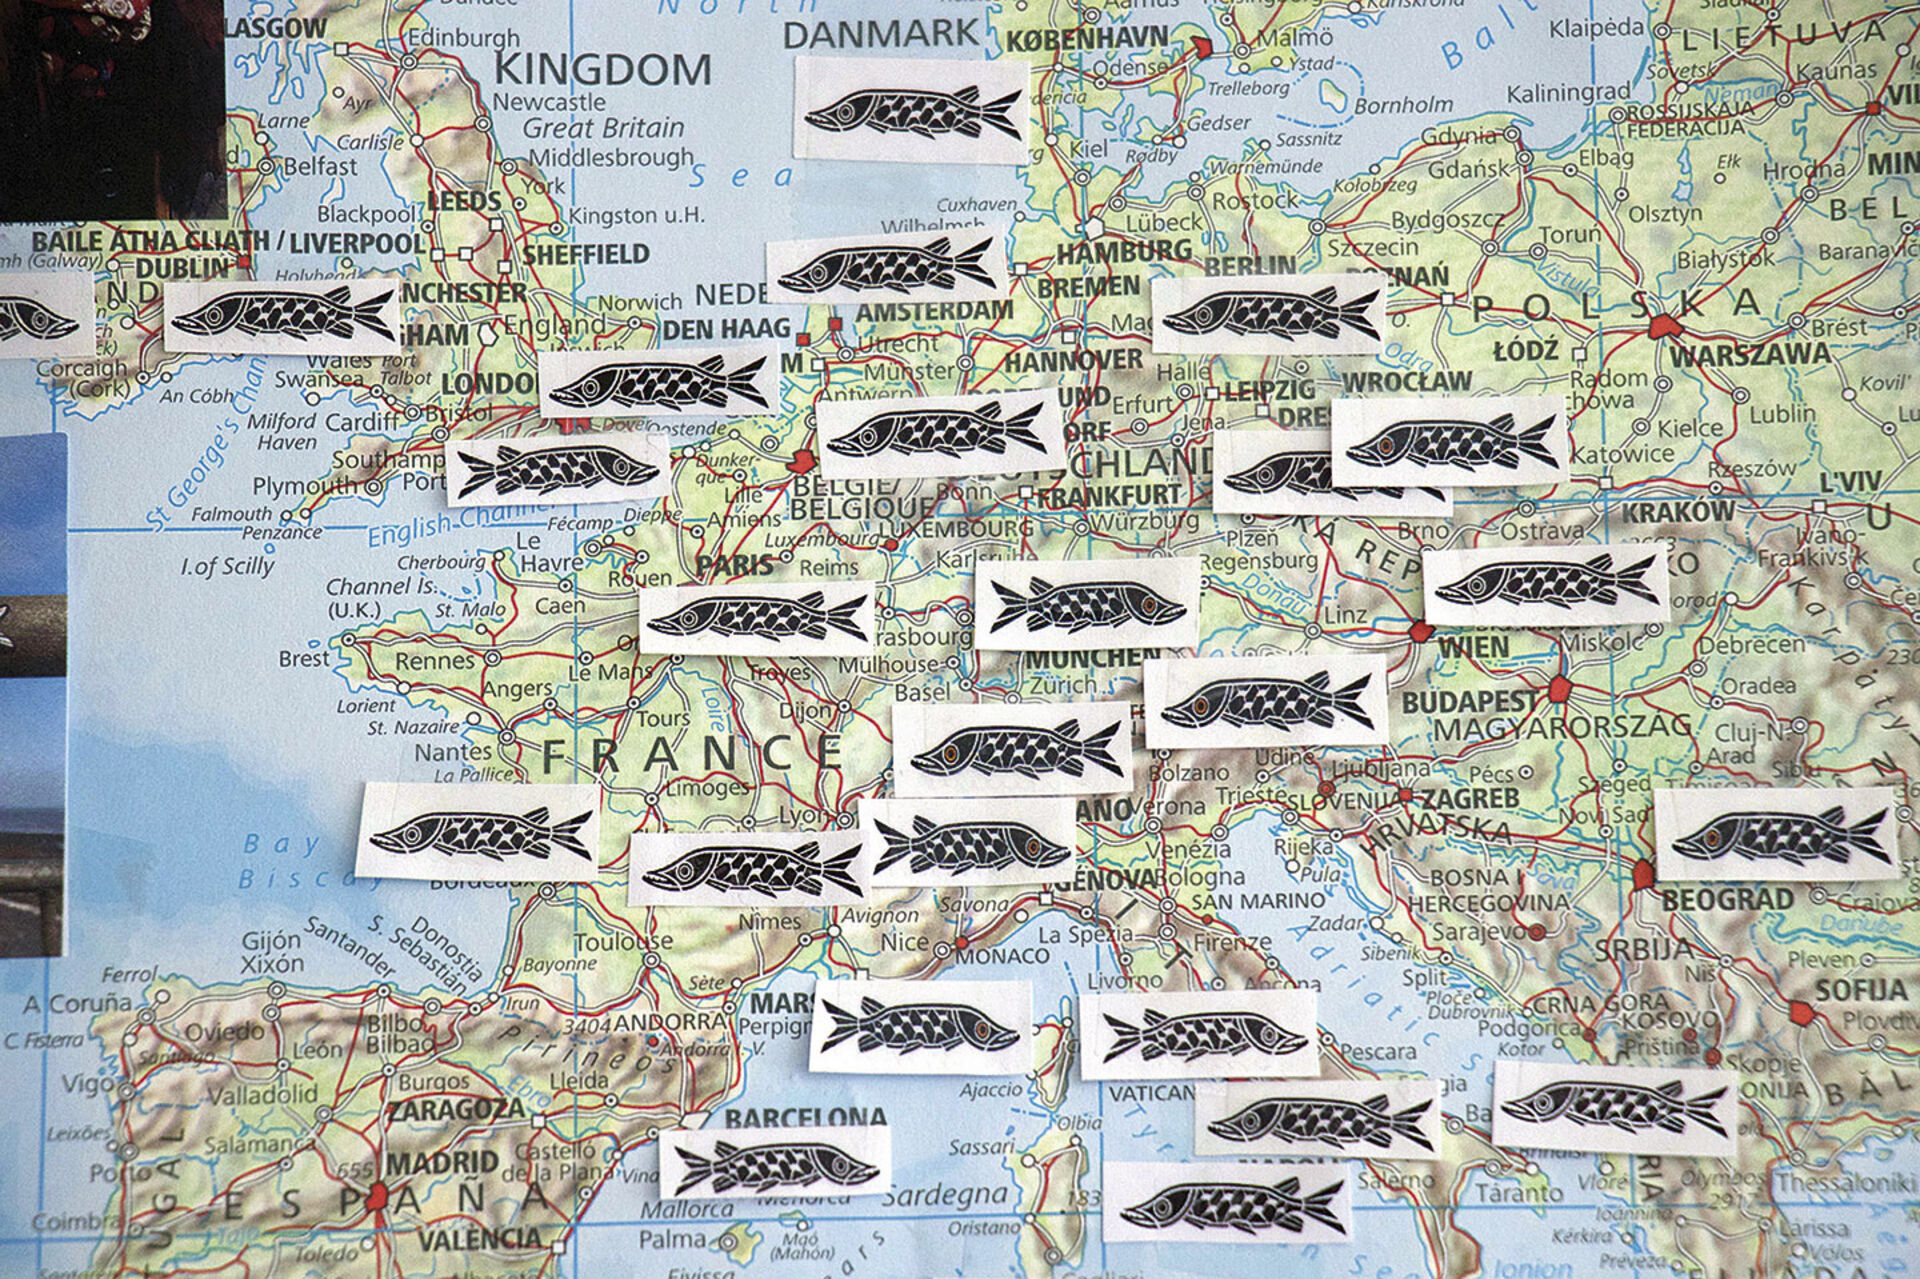  «Swim Koeder, swim!» Der Koeder schwimmt fleissig in Europa, wie diese Verbreitungskarte zeigt.  